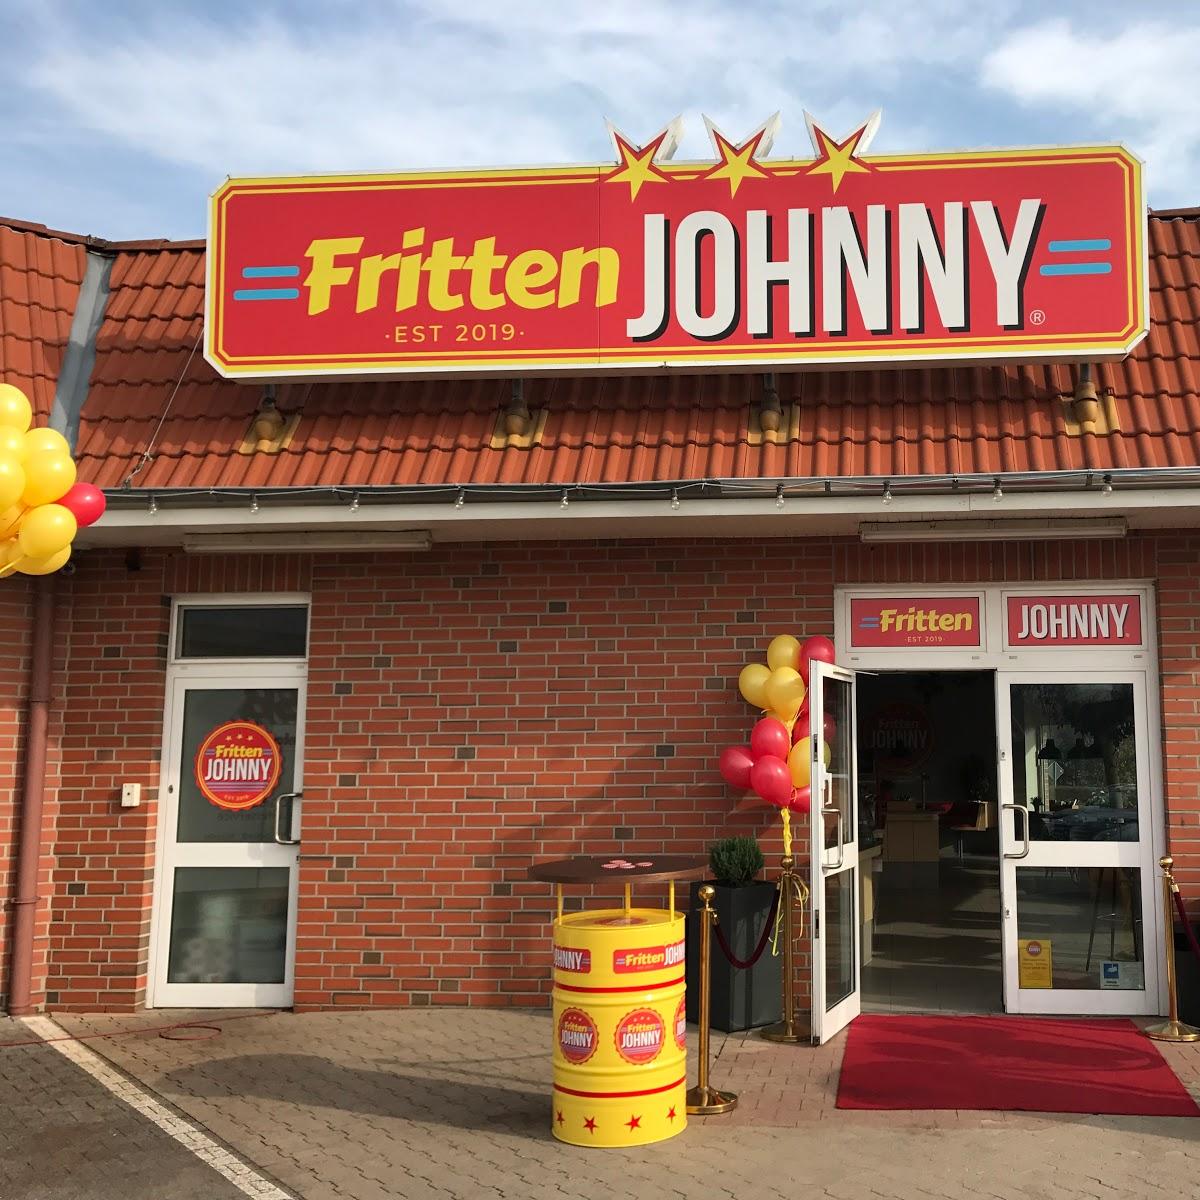 Restaurant "Fritten-Johnny" in  Ankum